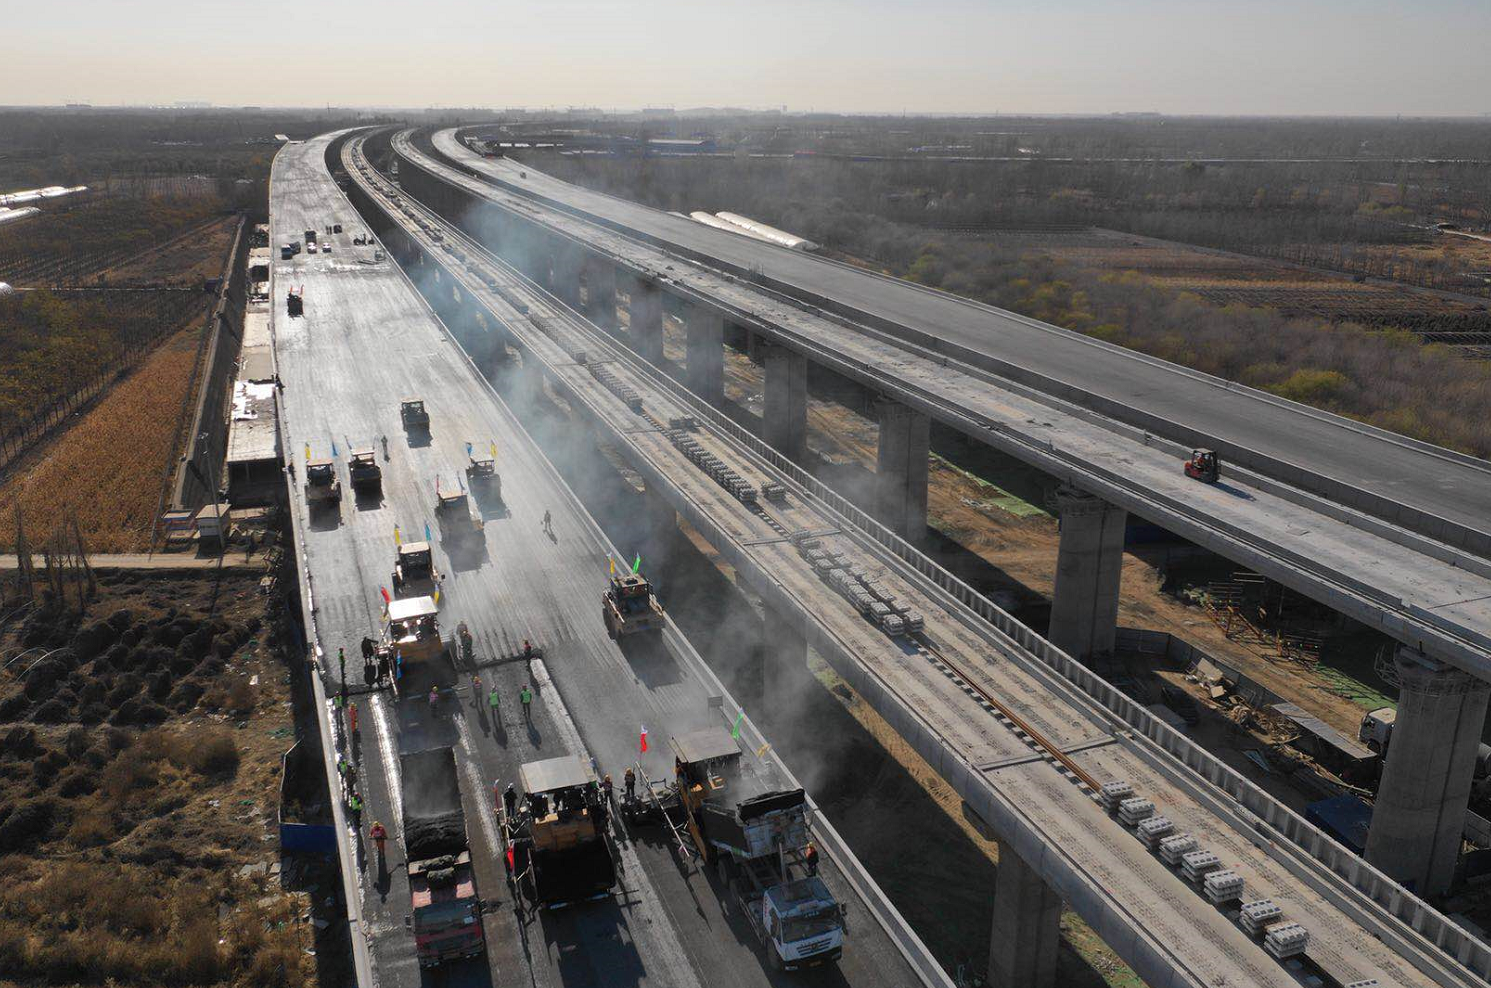 北京大兴国际机场高速公路建设完成超70%,预计2019年上半年完工